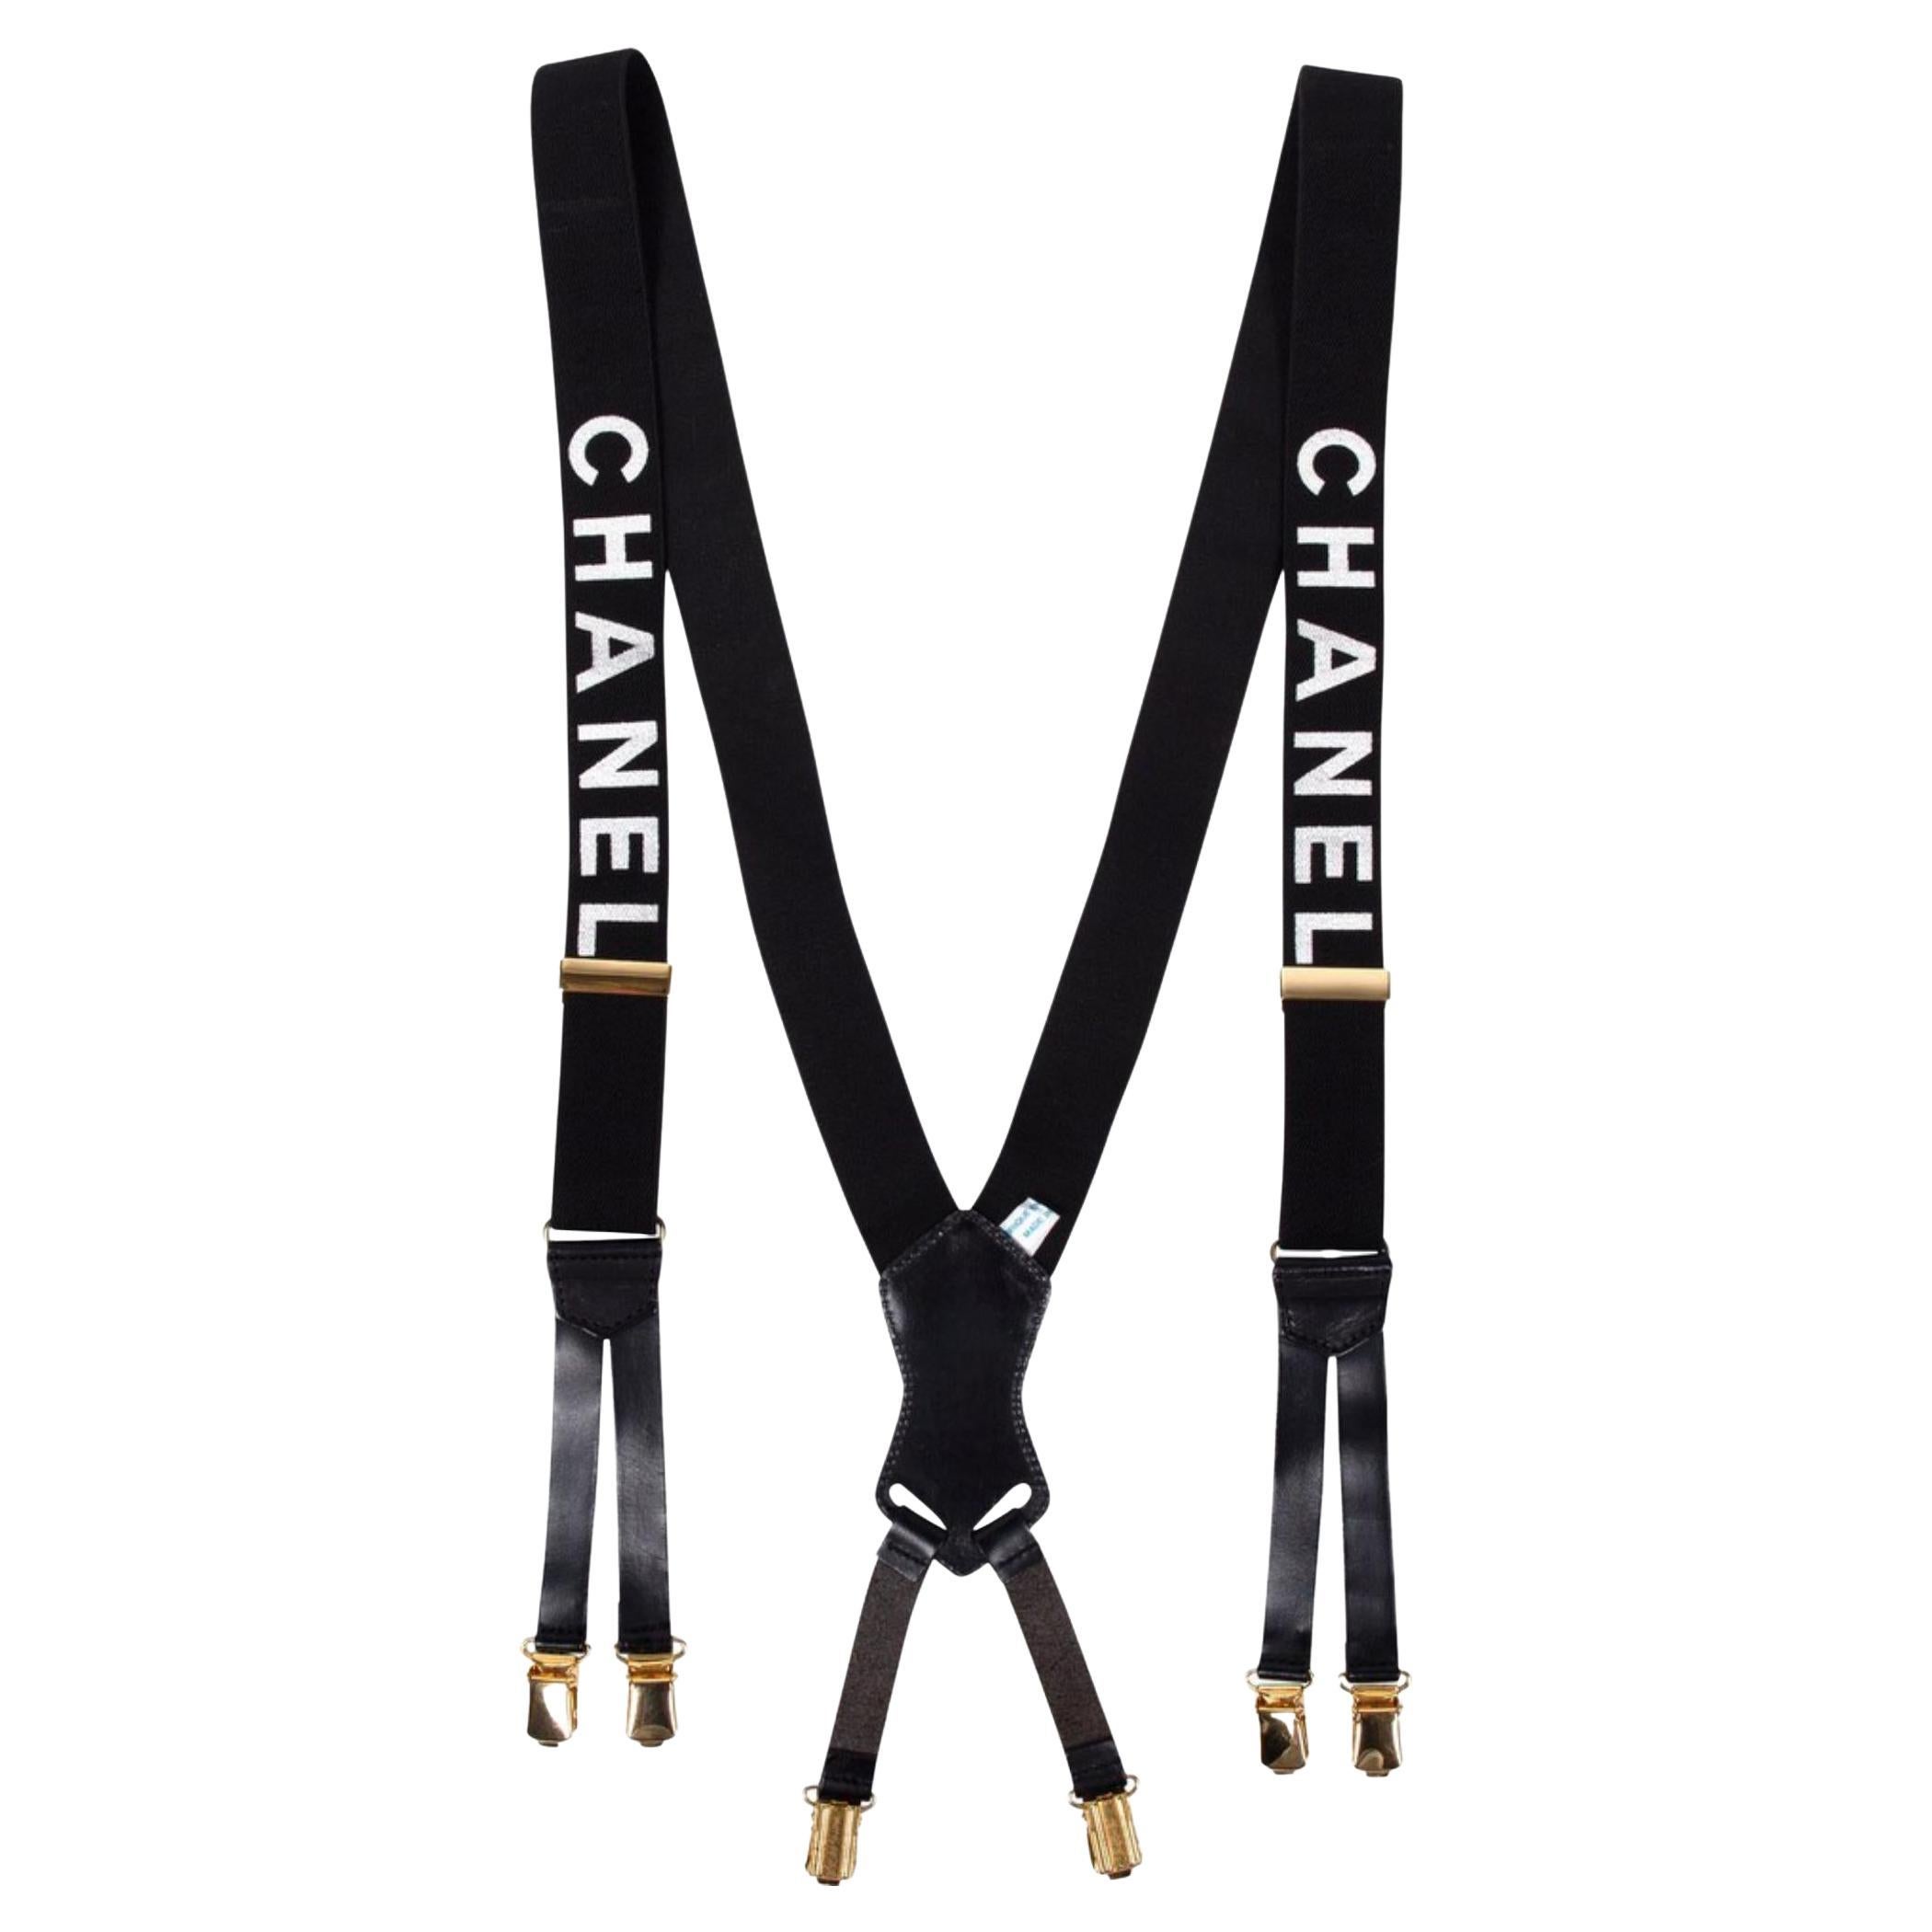 Suspensions Chanel noires avec logo CC 106c6